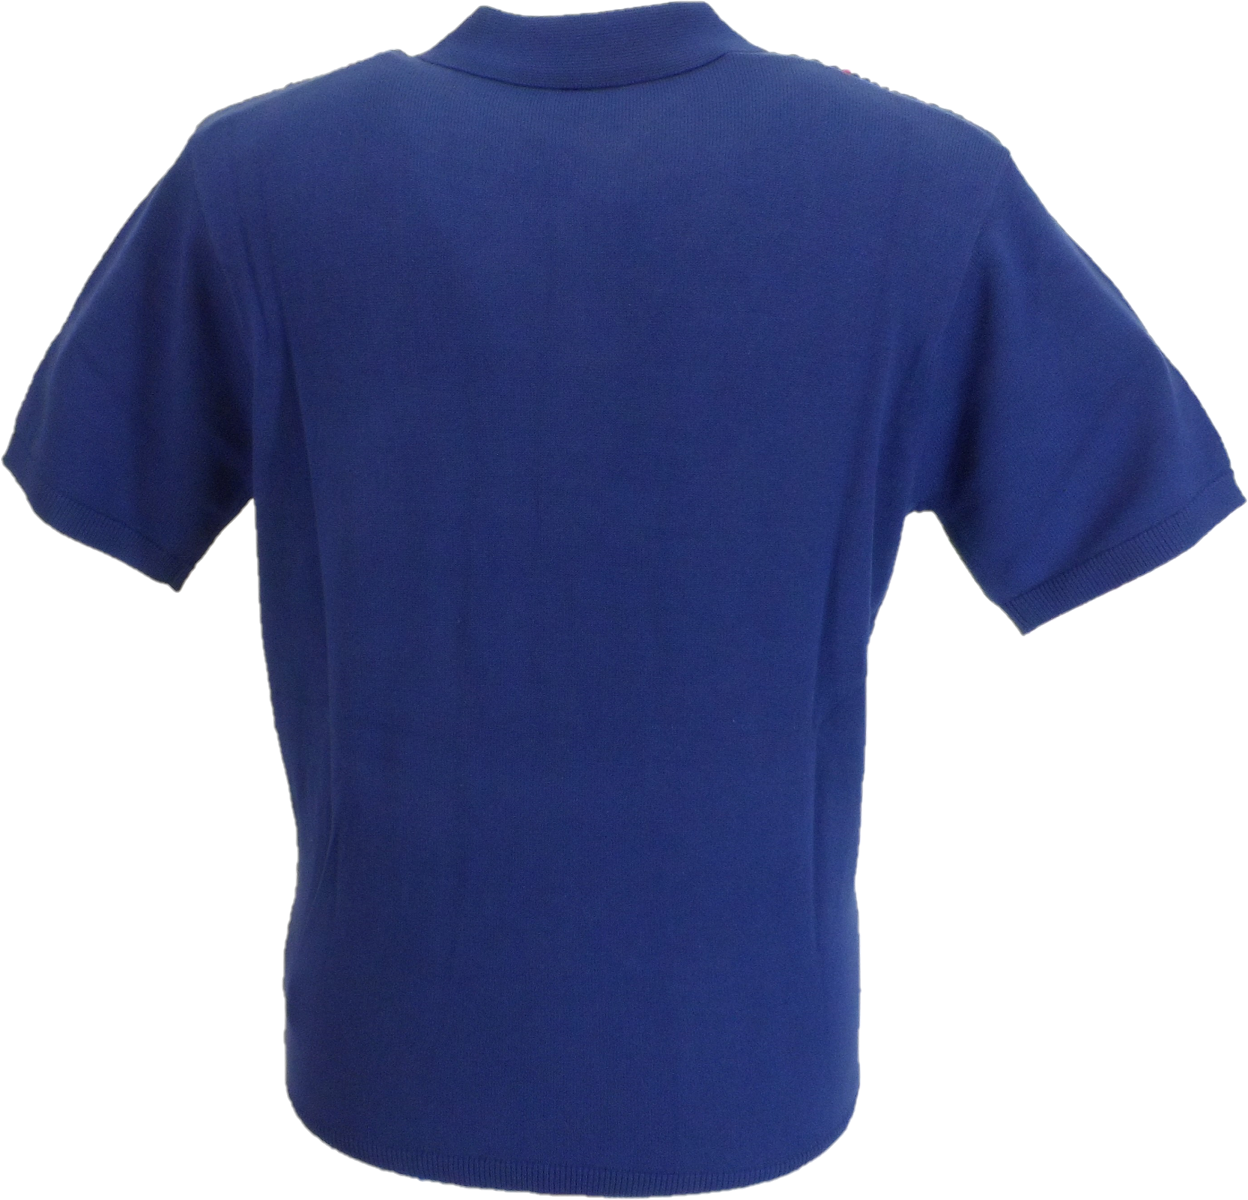 Gabicci Vintage Herren-Poloshirt mit Insignia-Muster in Blau